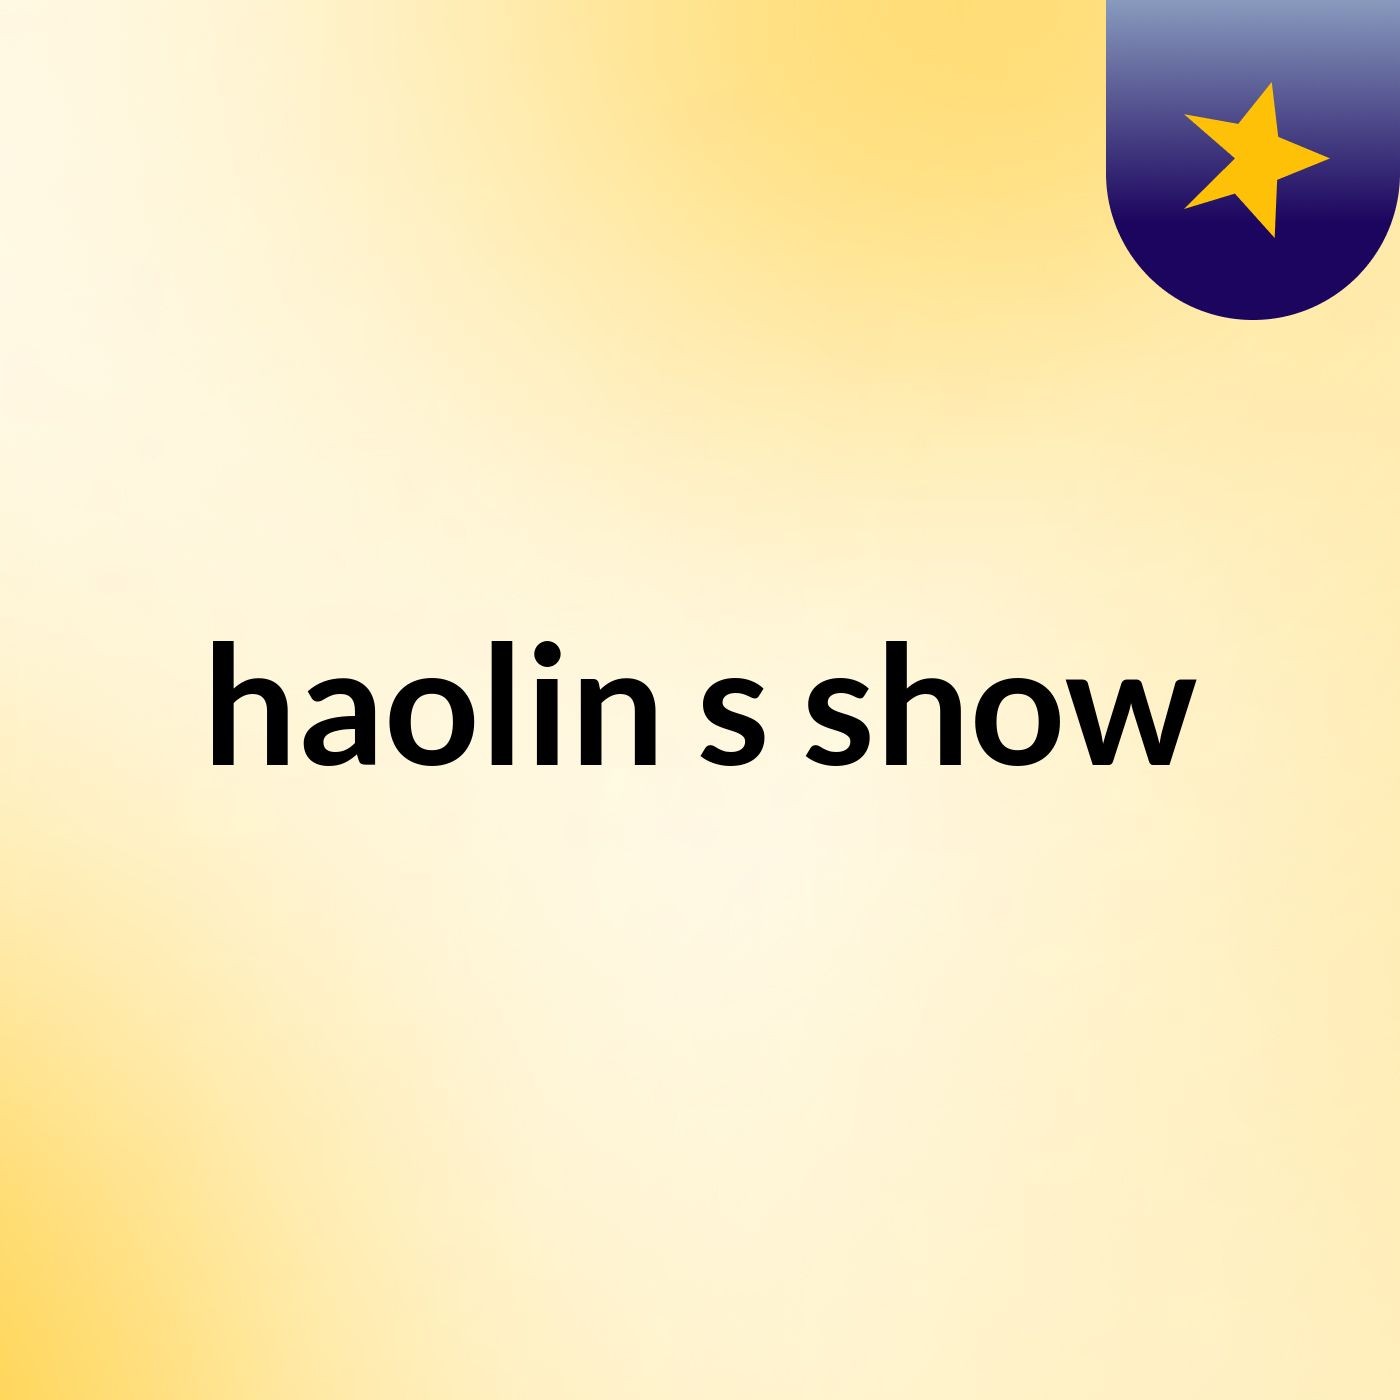 haolin's show